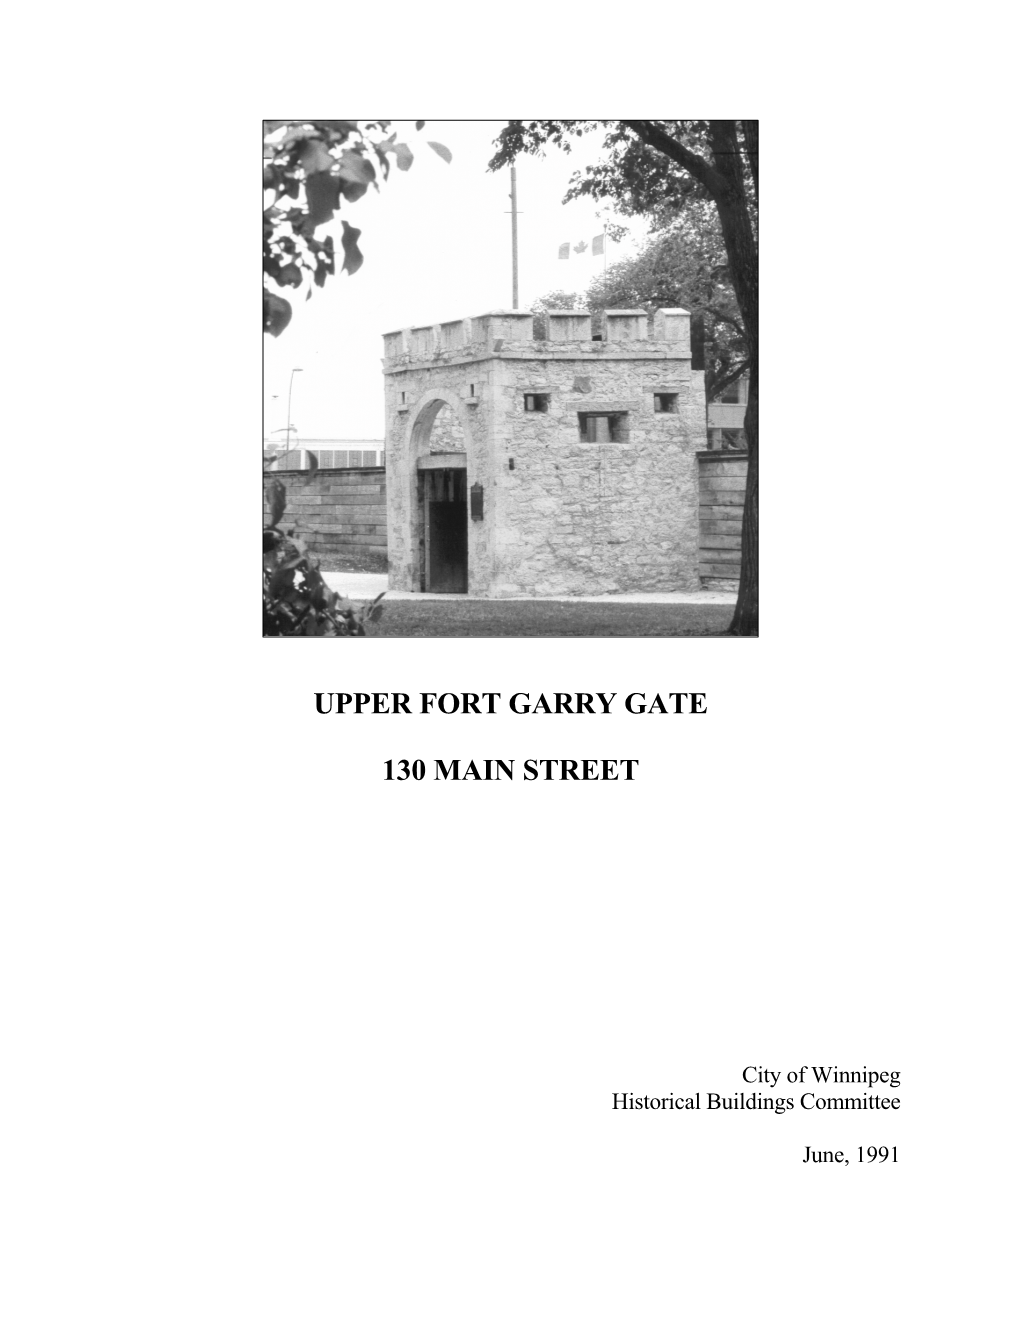 Upper Fort Garry Gate, 130 Main Street